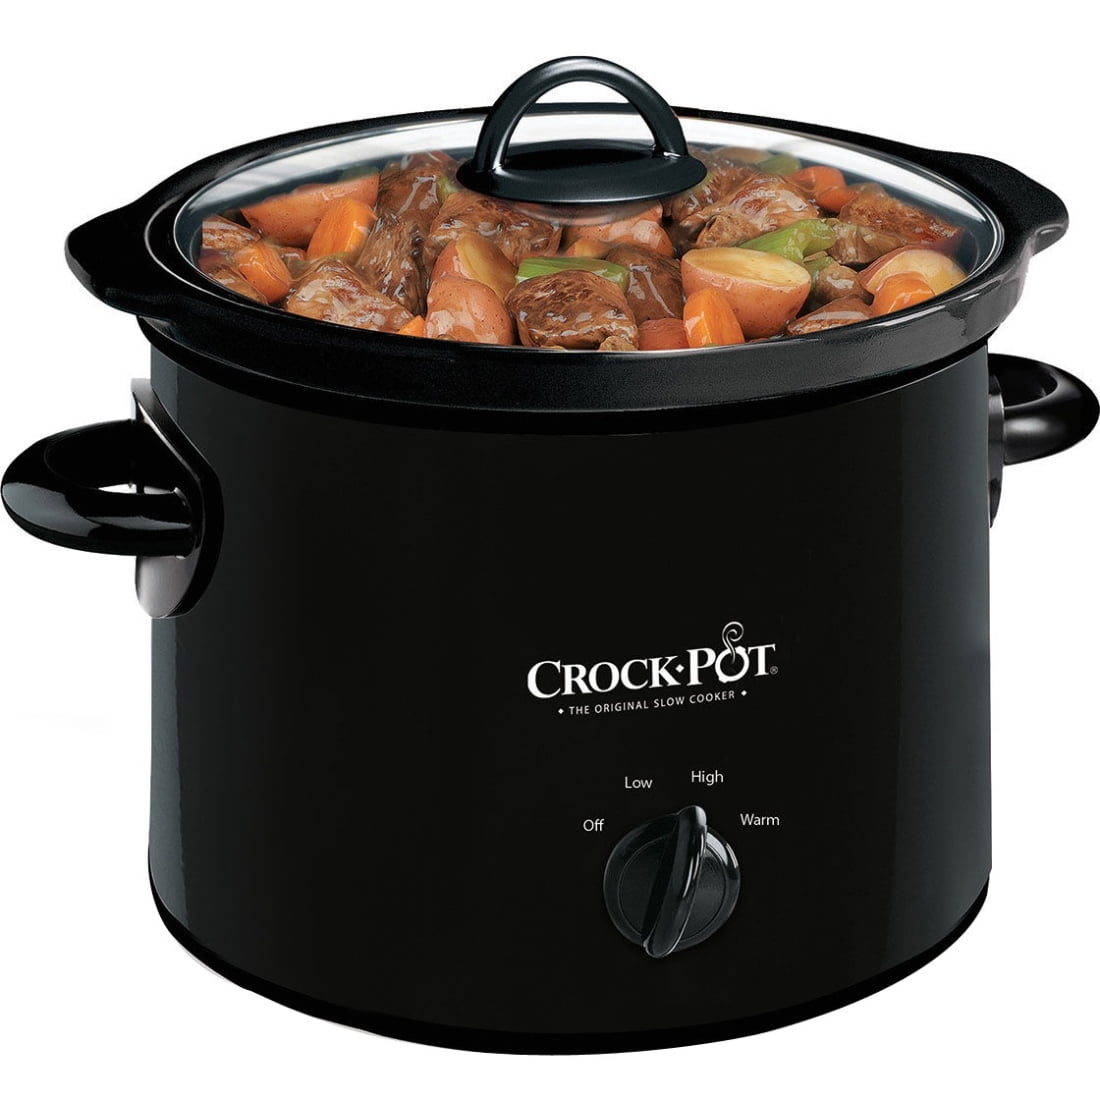 Crock-Pot 3-Quart Manual Slow Cooker Black SCR300-B 